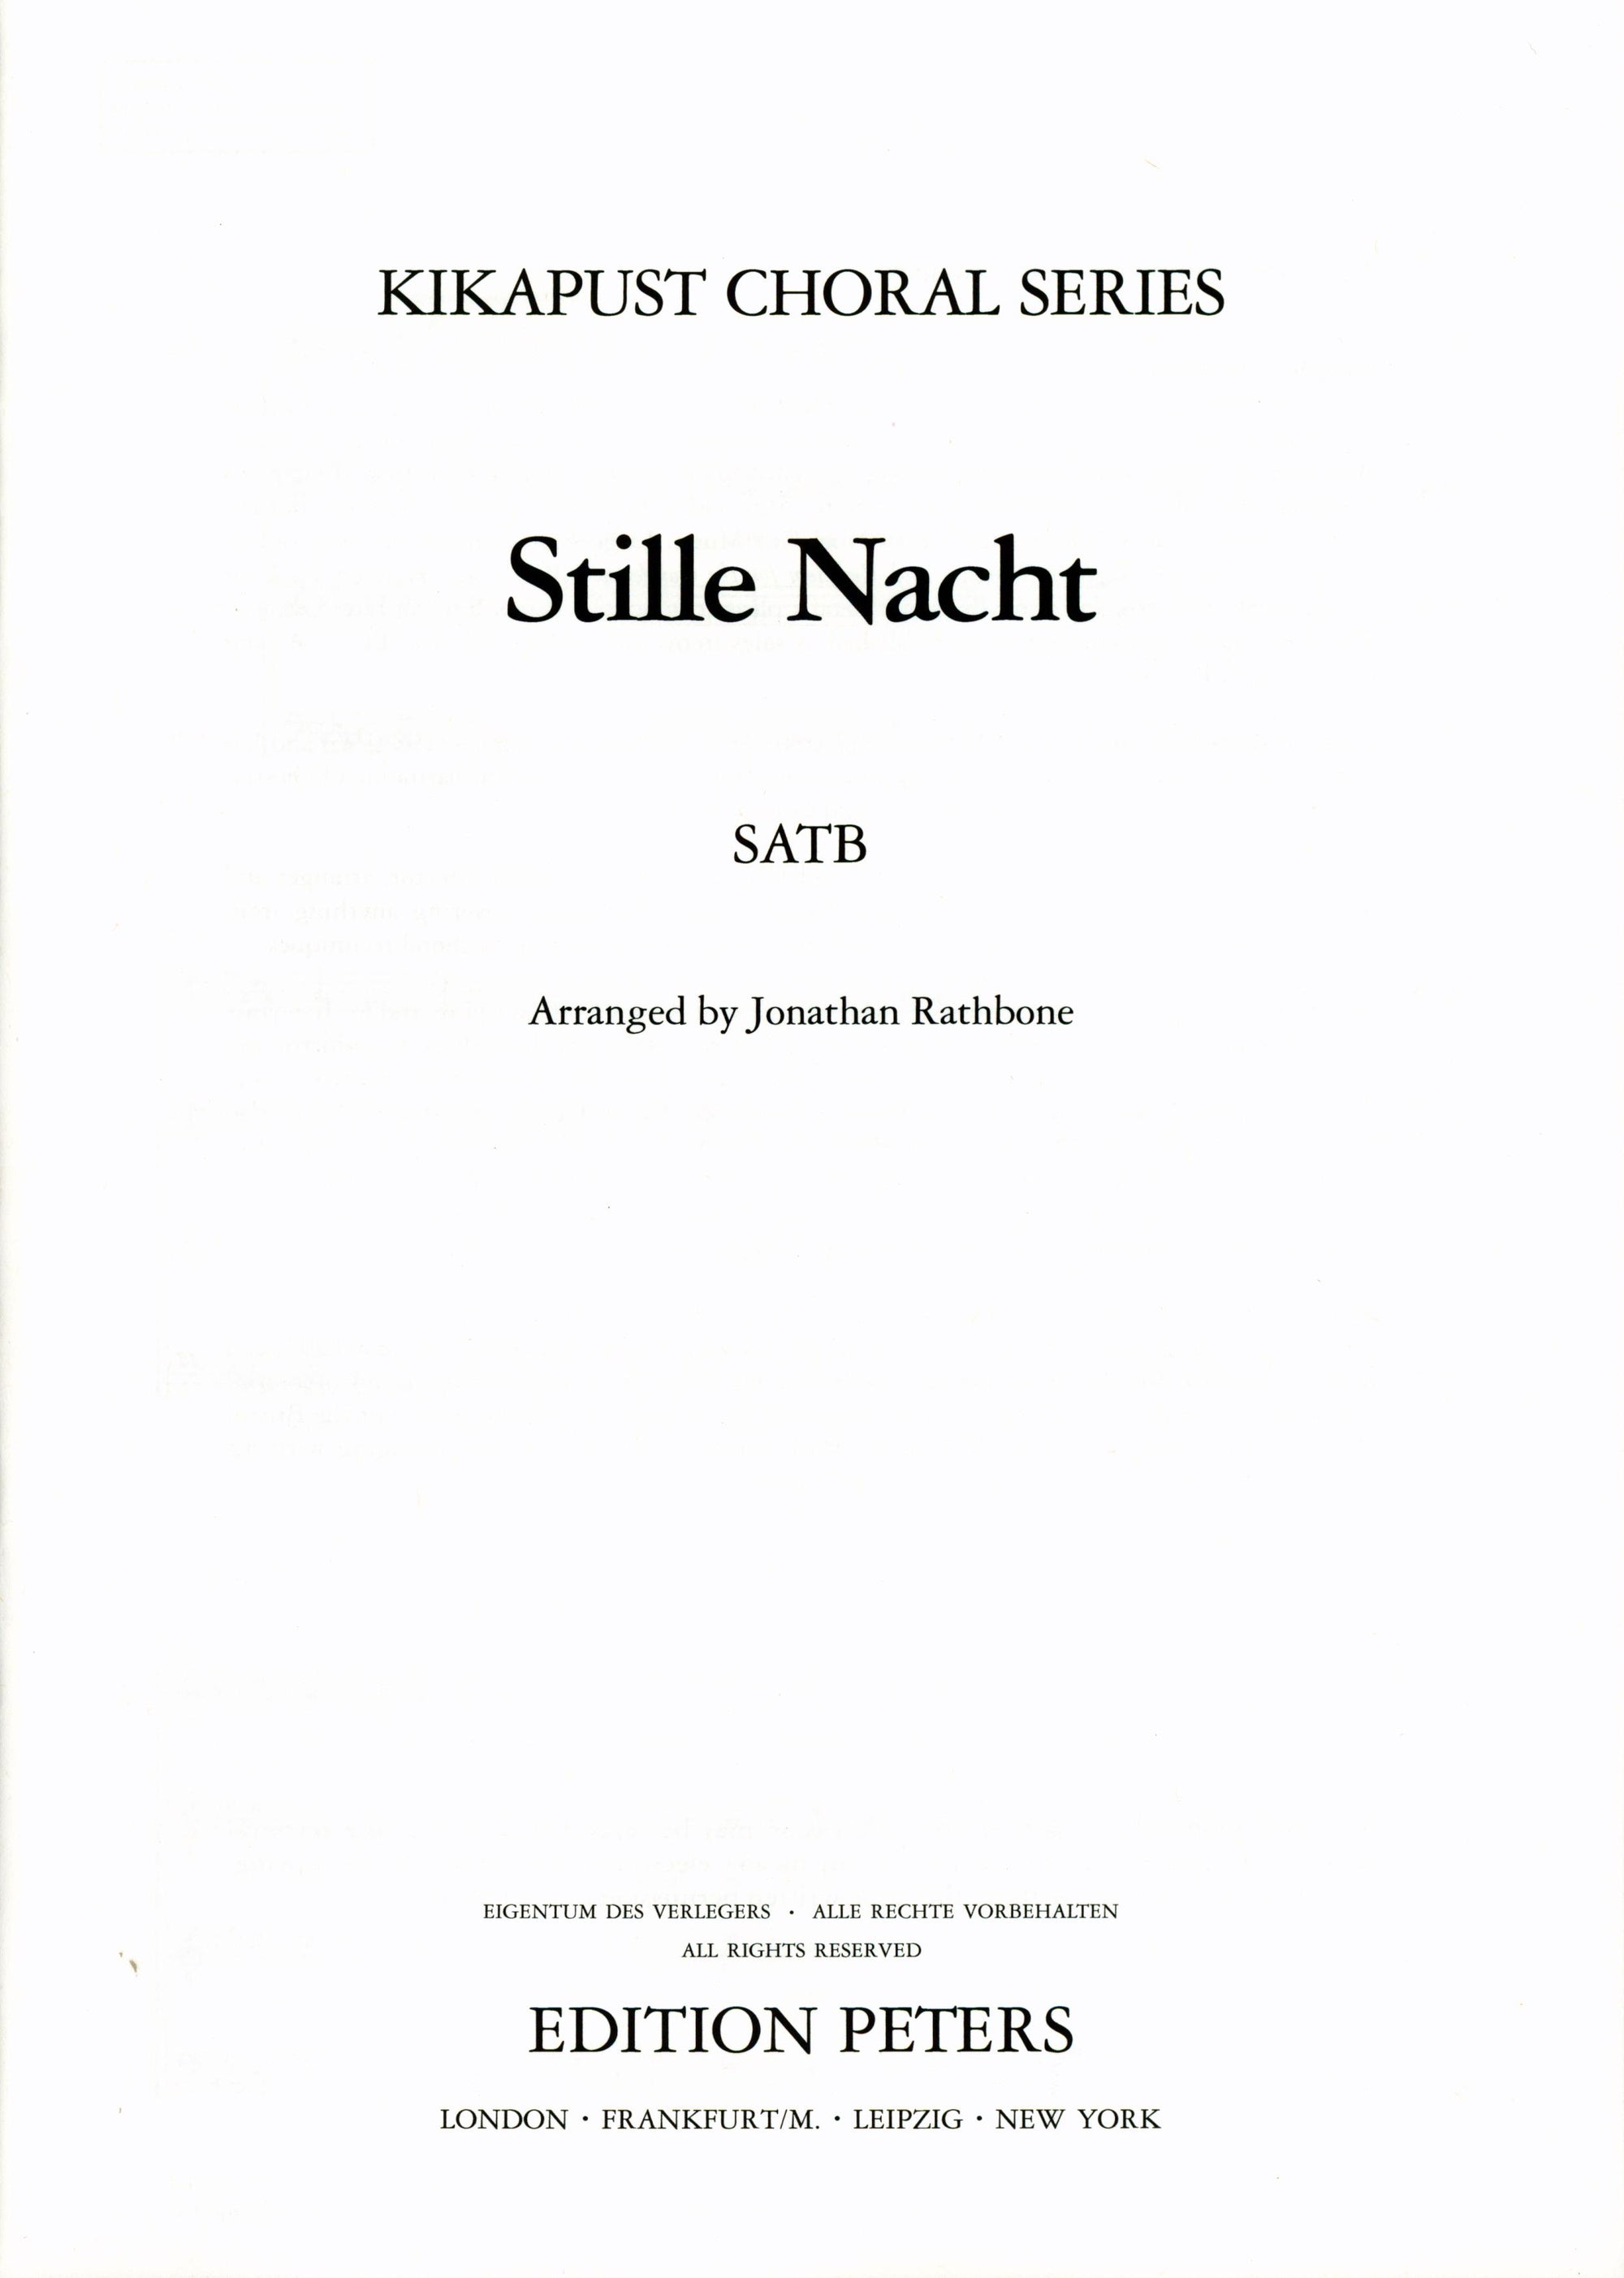 Gruber: Stille Nacht (arr. for SATB Choir)